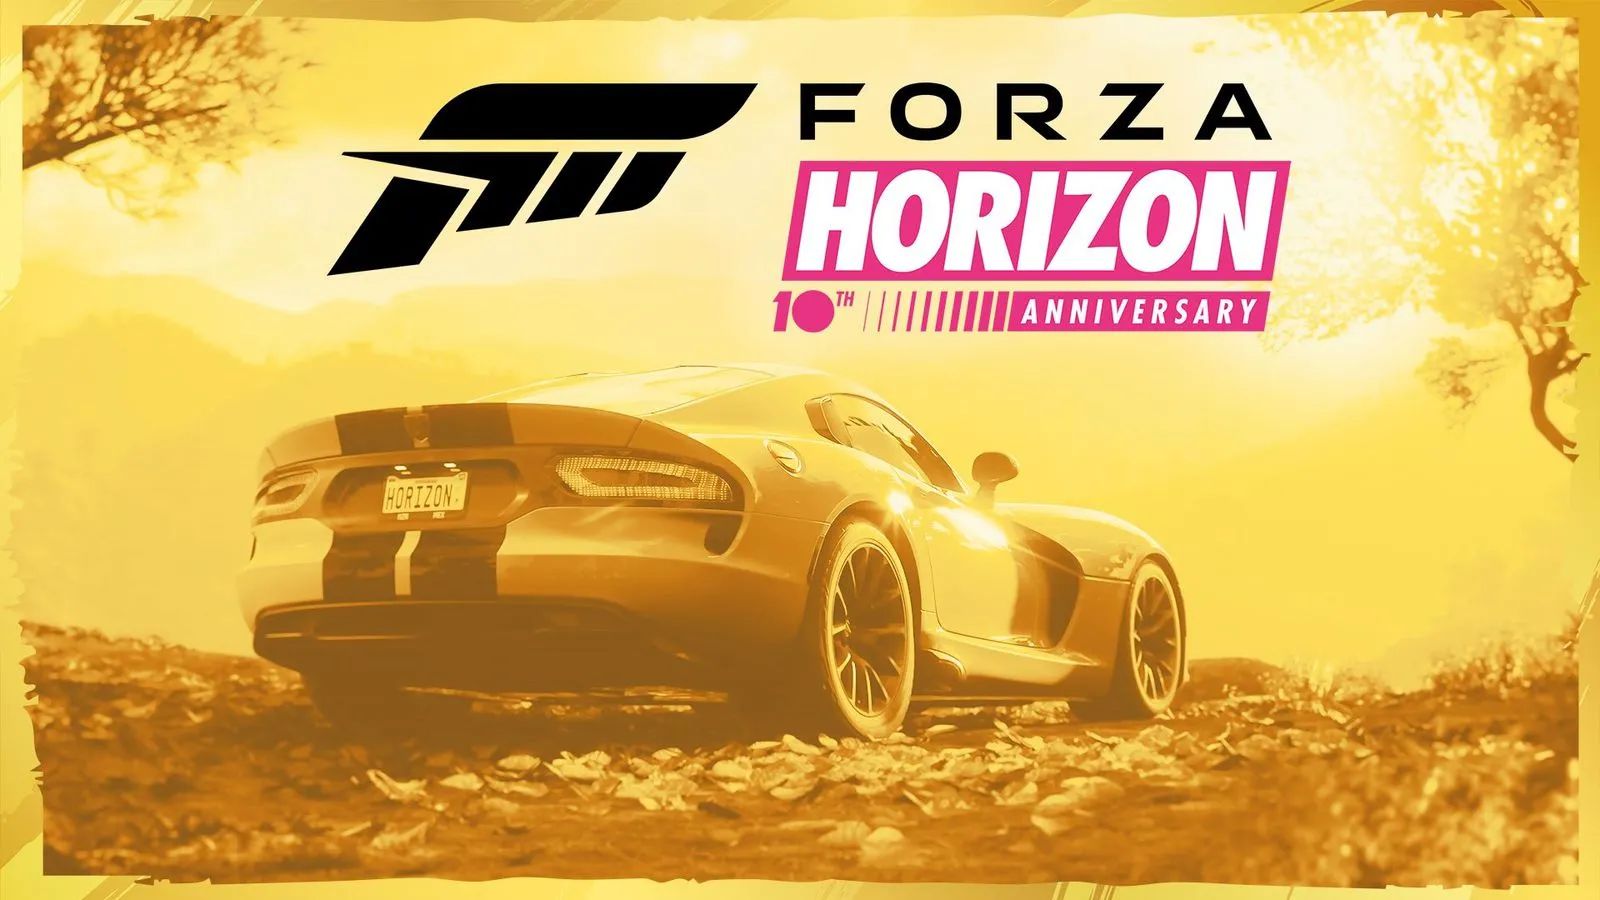 Immagine di Forza Horizon festeggia 10 anni con nuovi contenuti per il quinto capitolo e diverse novità